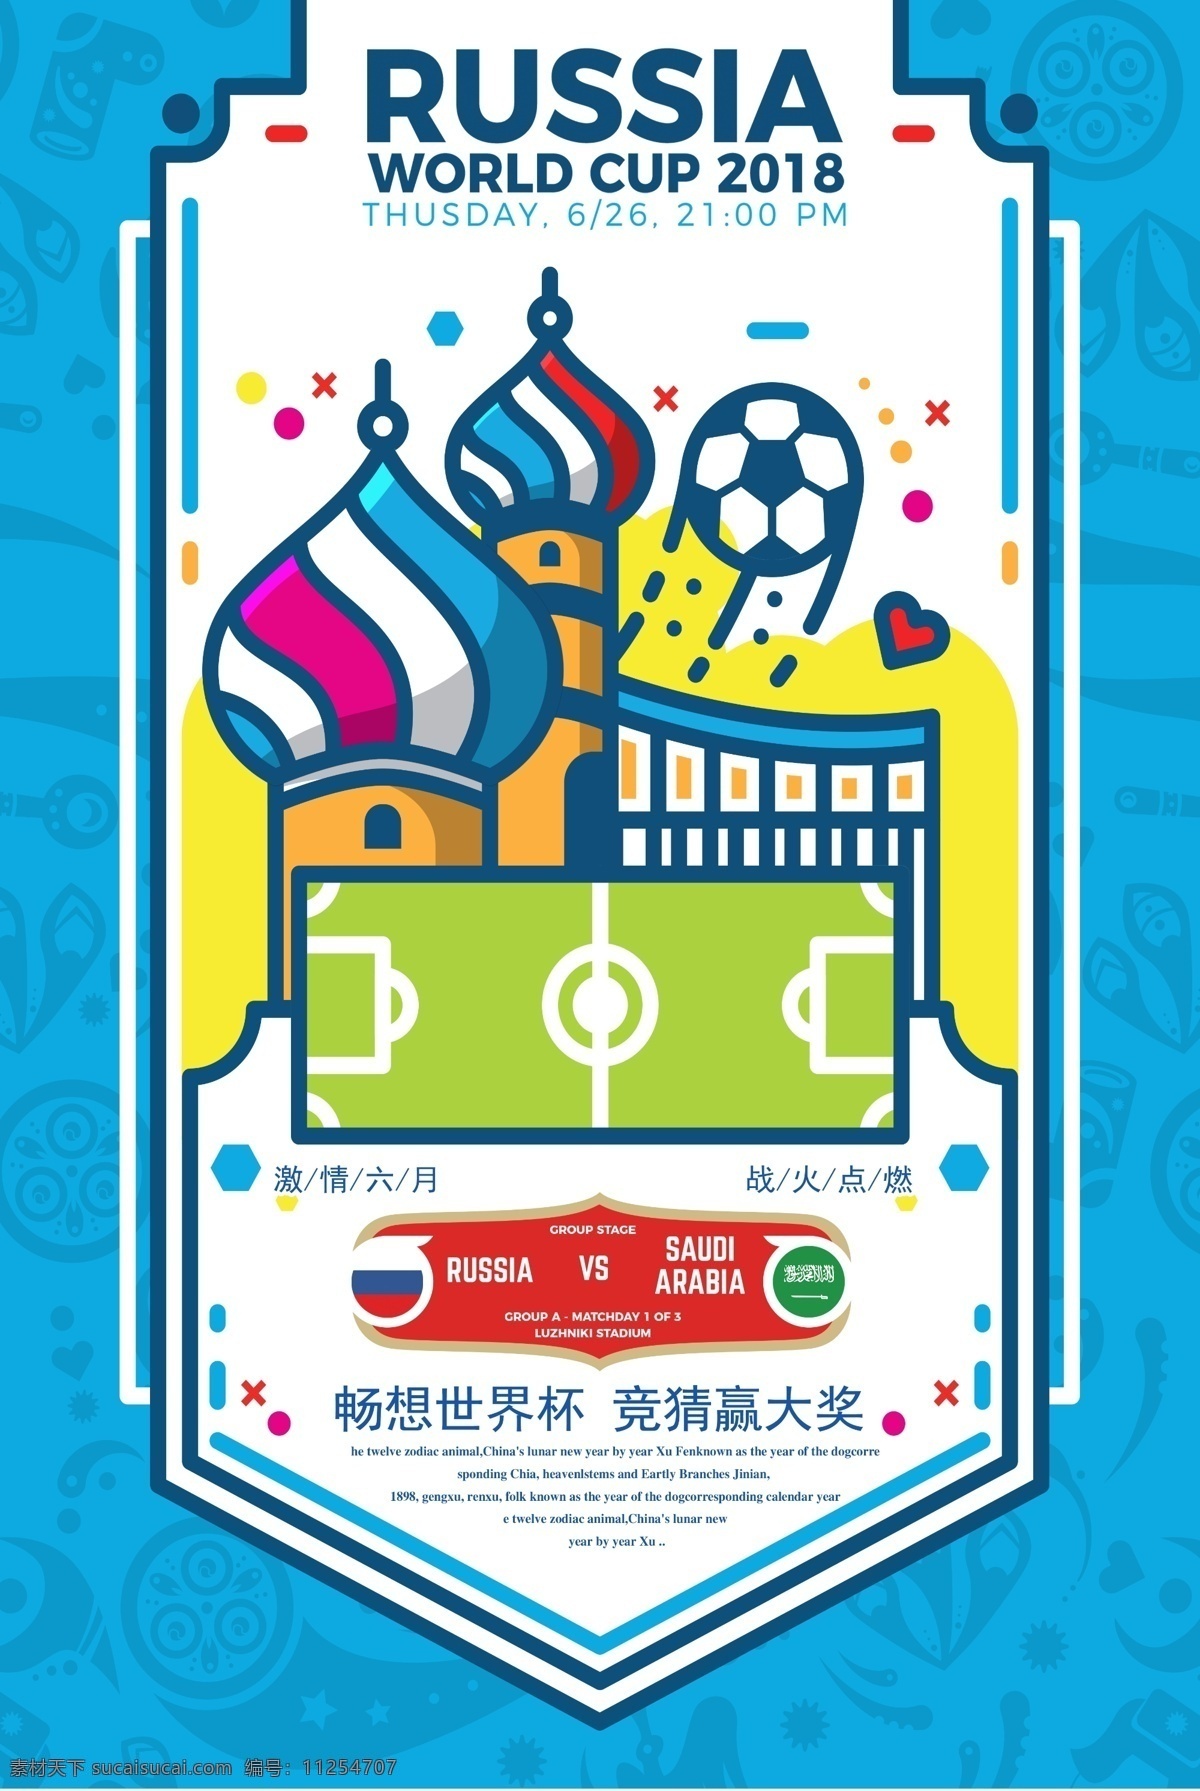 插画 2018 俄罗斯 世界杯 竞猜 海报 足球 足球场 蓝色背景 俄罗斯建筑 世界杯竞猜 平面素材